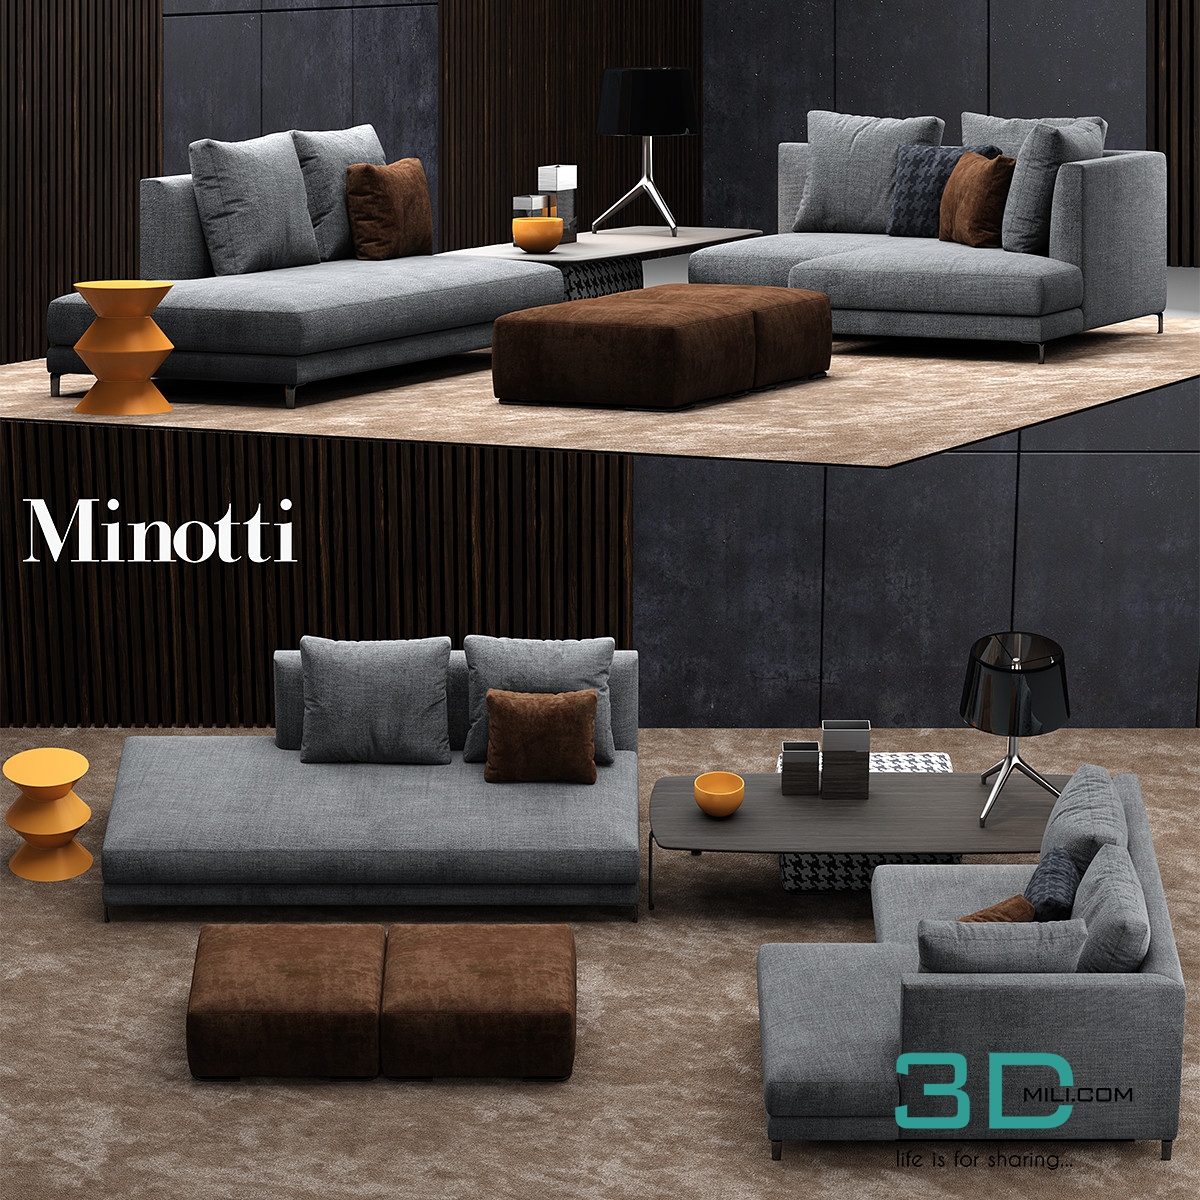 Minotti Allen 2 3D Mili Download 3D Model Free 3D Models 3D